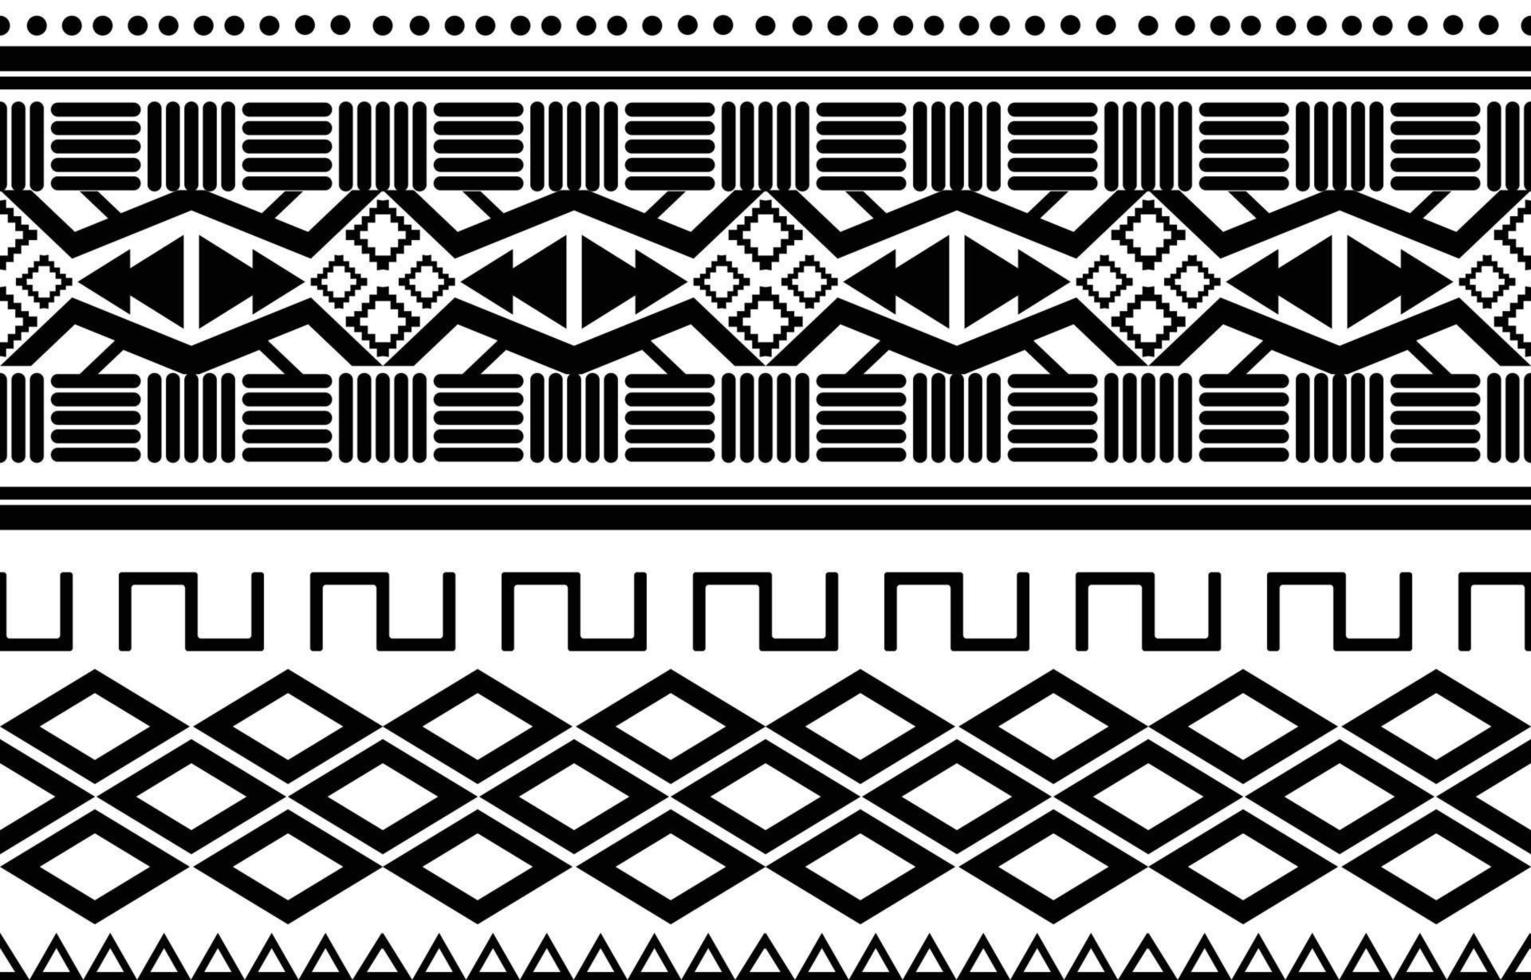 padrão geométrico étnico abstrato preto e branco tribal africano. design para ilustração de fundo ou wallpaper.vector para imprimir padrões de tecido, tapetes, camisas, fantasias, turbante, chapéus, cortinas. vetor